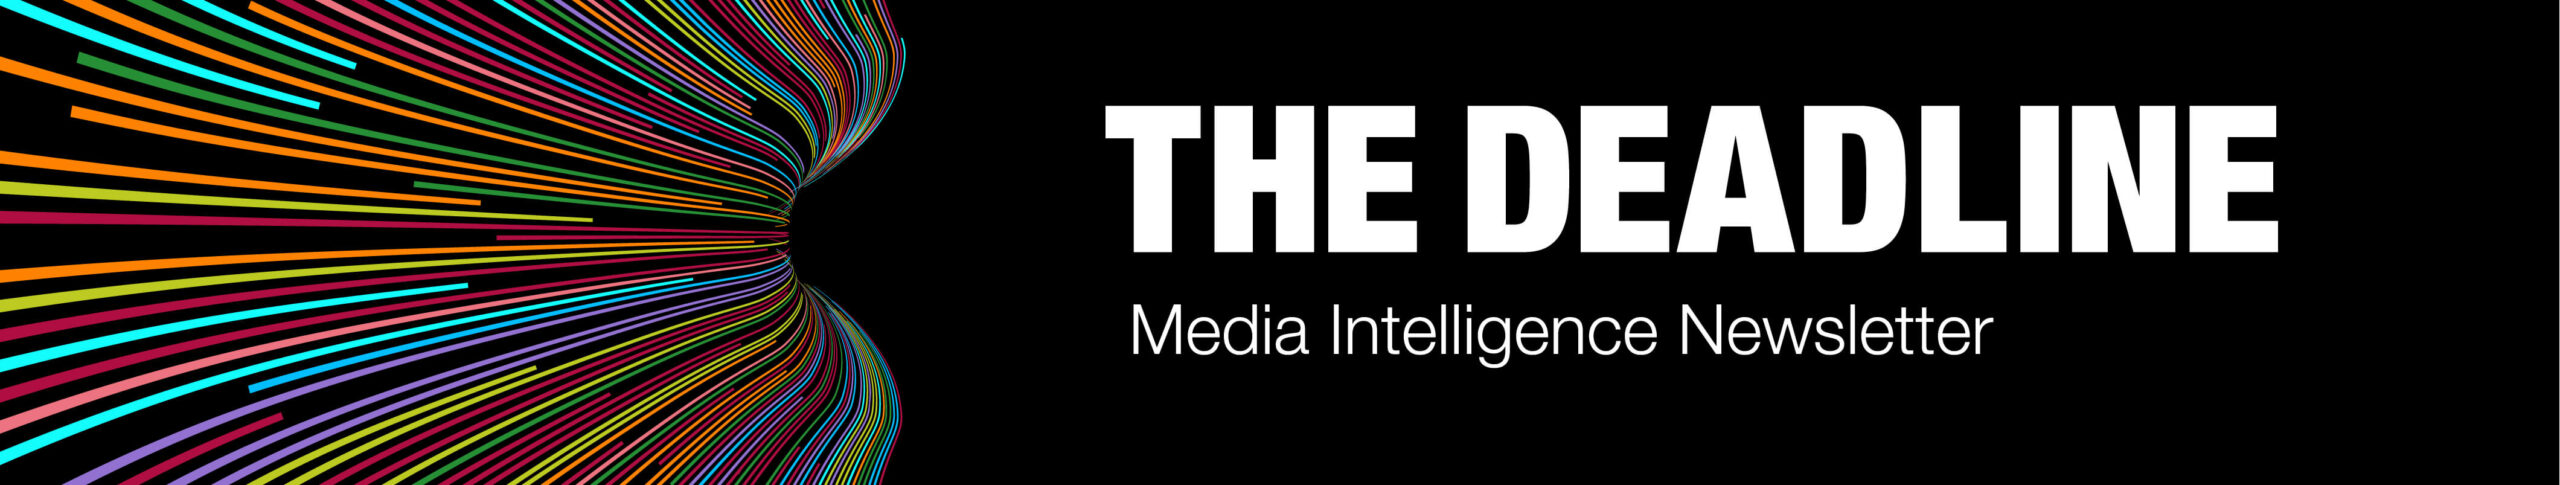 The Deadline - Media Intelligence Newsletter.